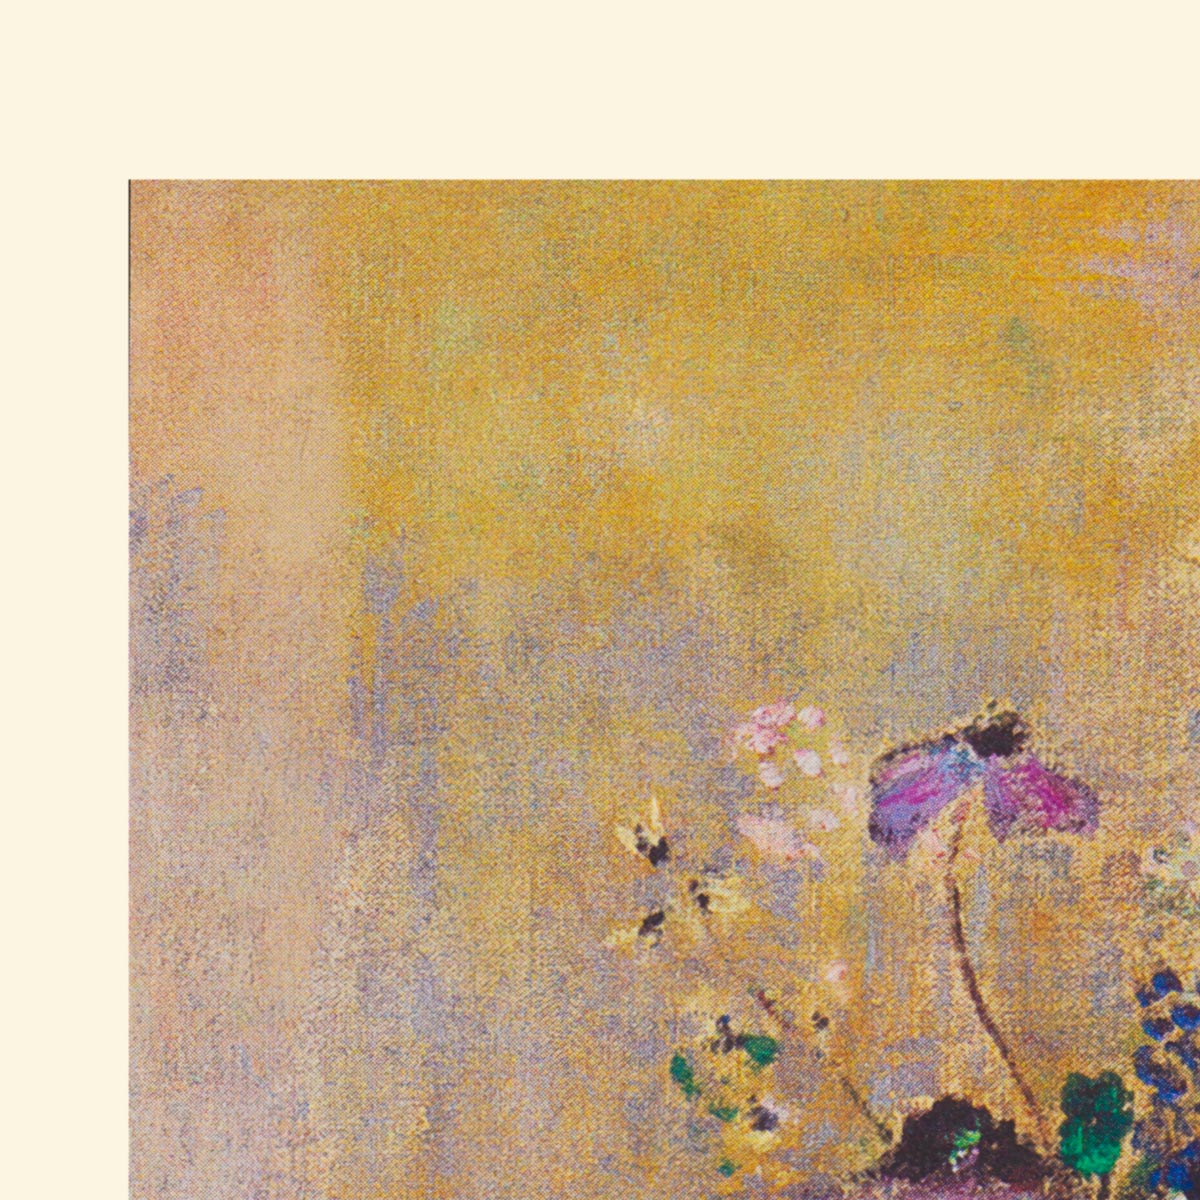 Field Flowers by Odilon Redon